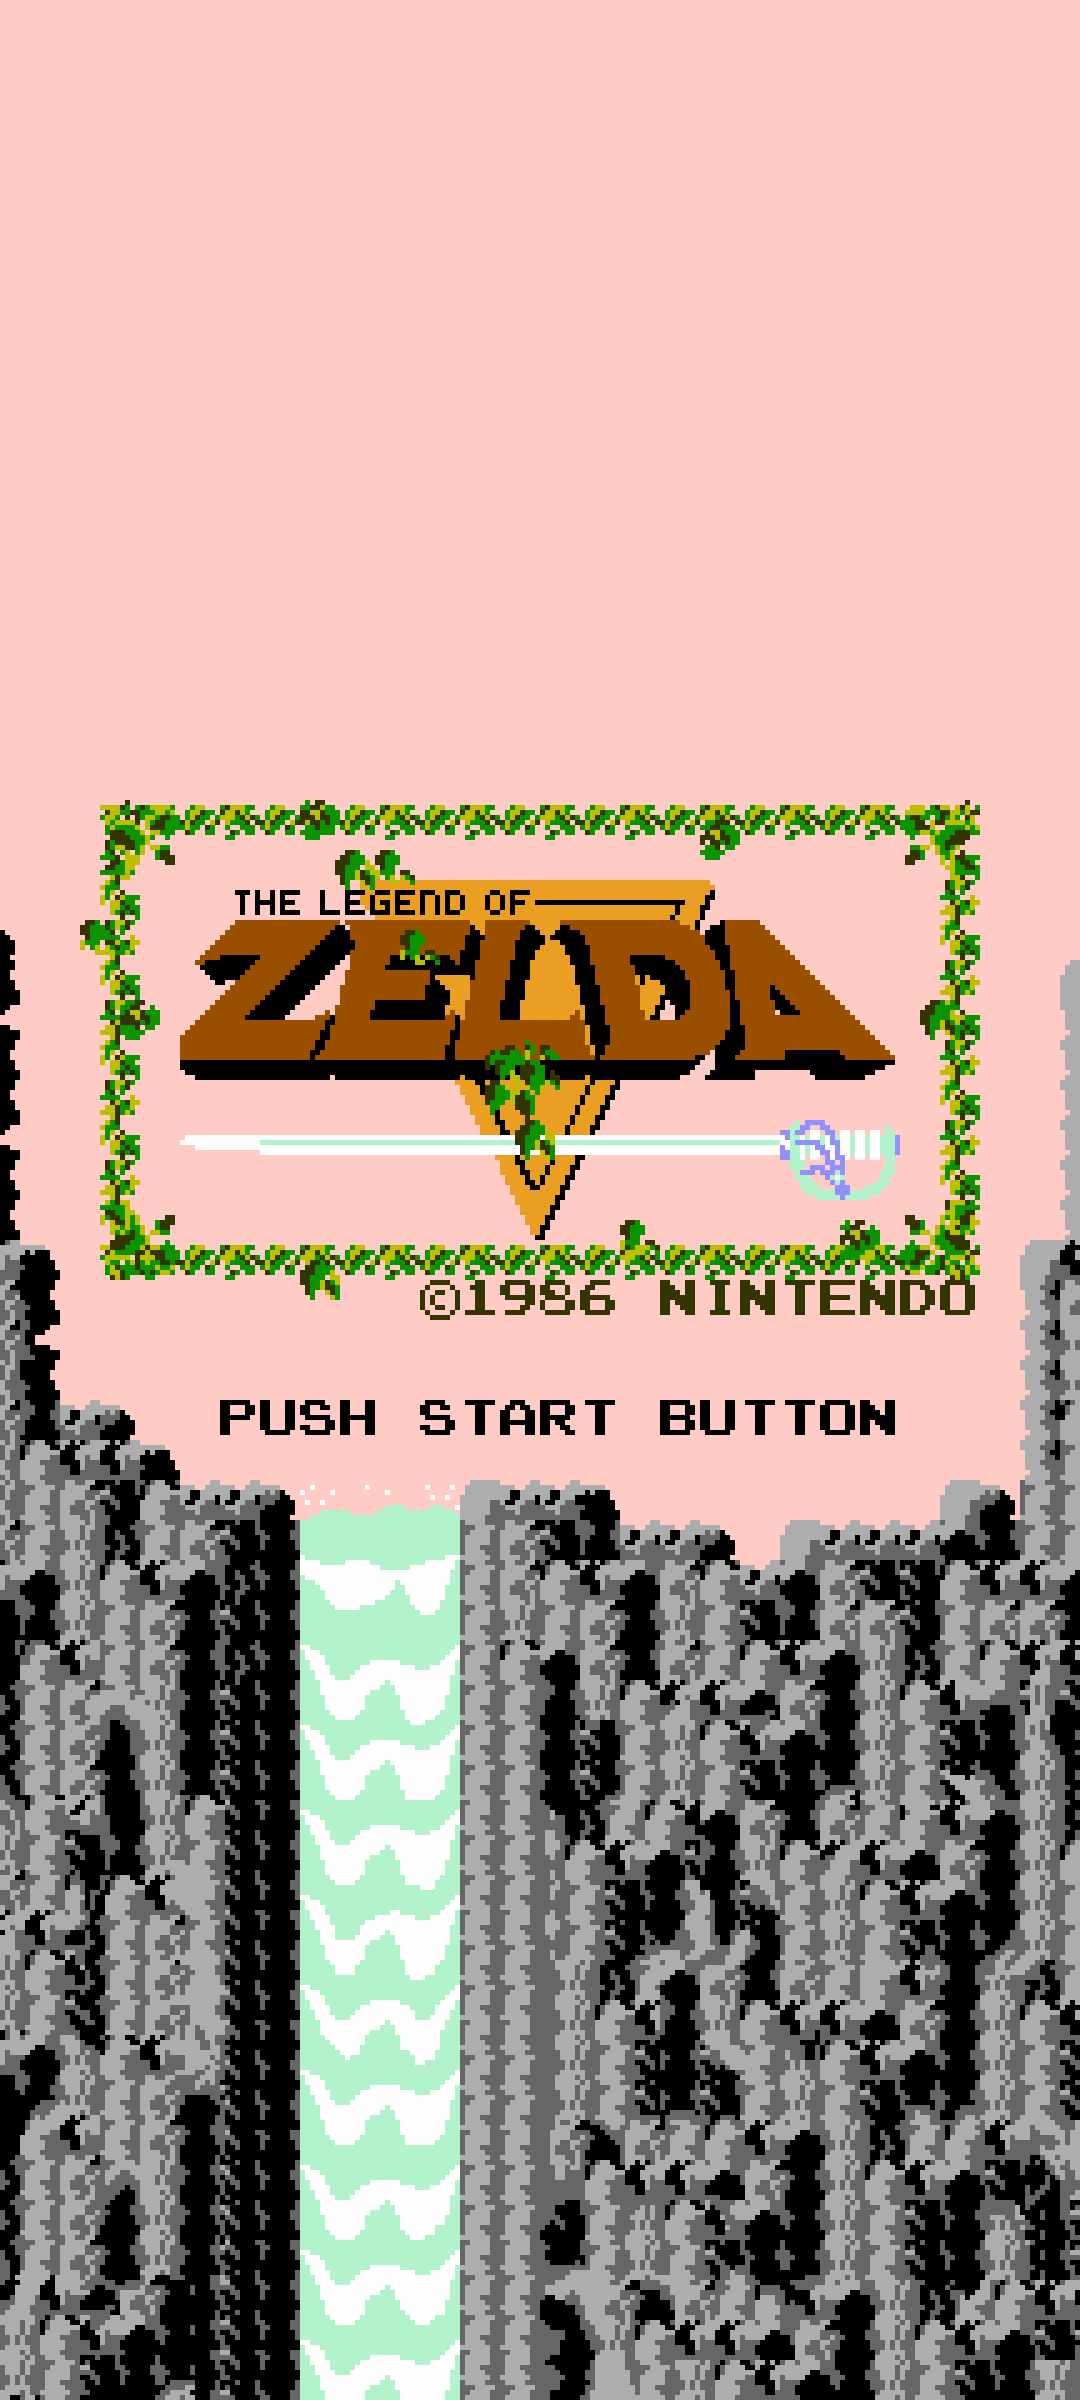 Legend of Zelda NES Phone Wallpapers   Album on Imgur 1080x2400